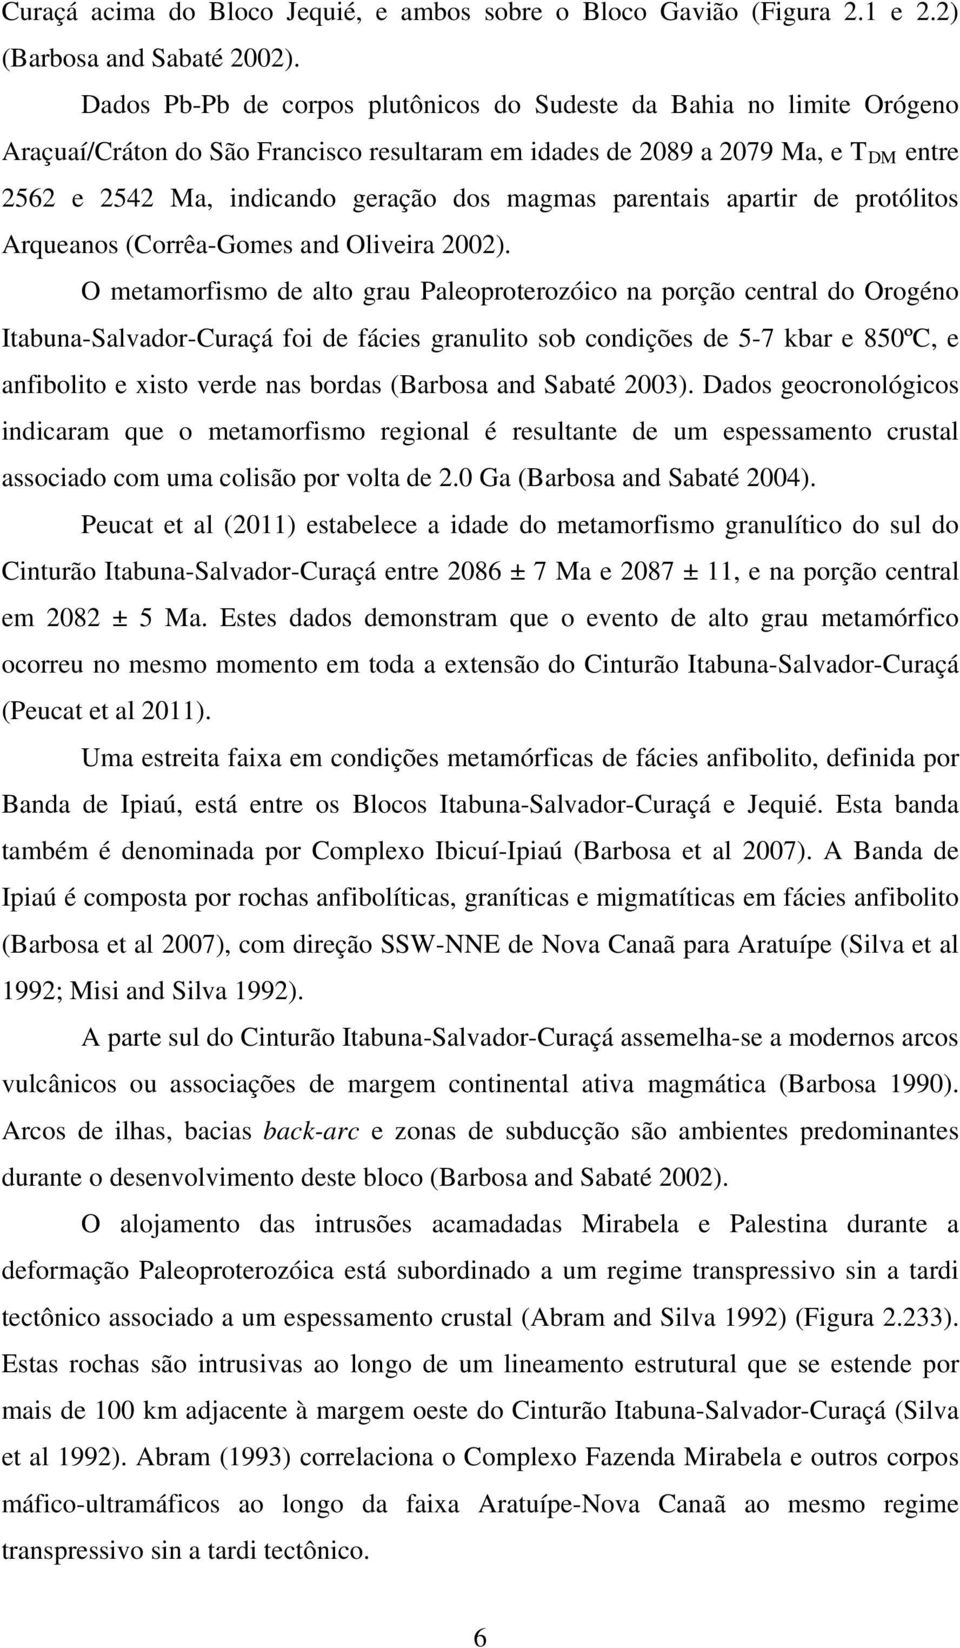 magmas parentais apartir de protólitos Arqueanos (Corrêa-Gomes and Oliveira 2002).